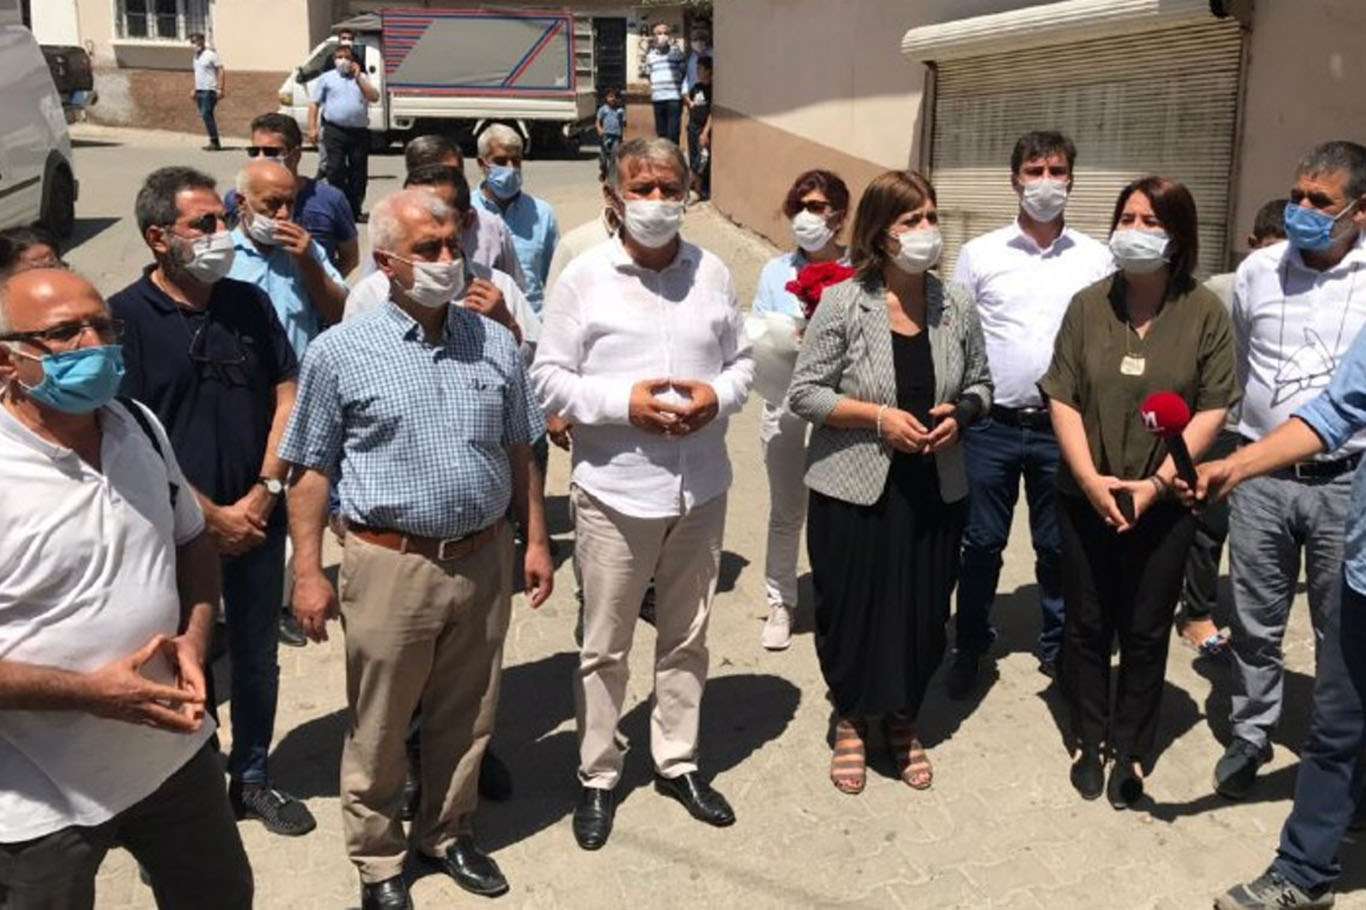 Gaziantep'teki düğün saldırısında hayatını kaybedenlerin yakınlarından HDP’ye tepki